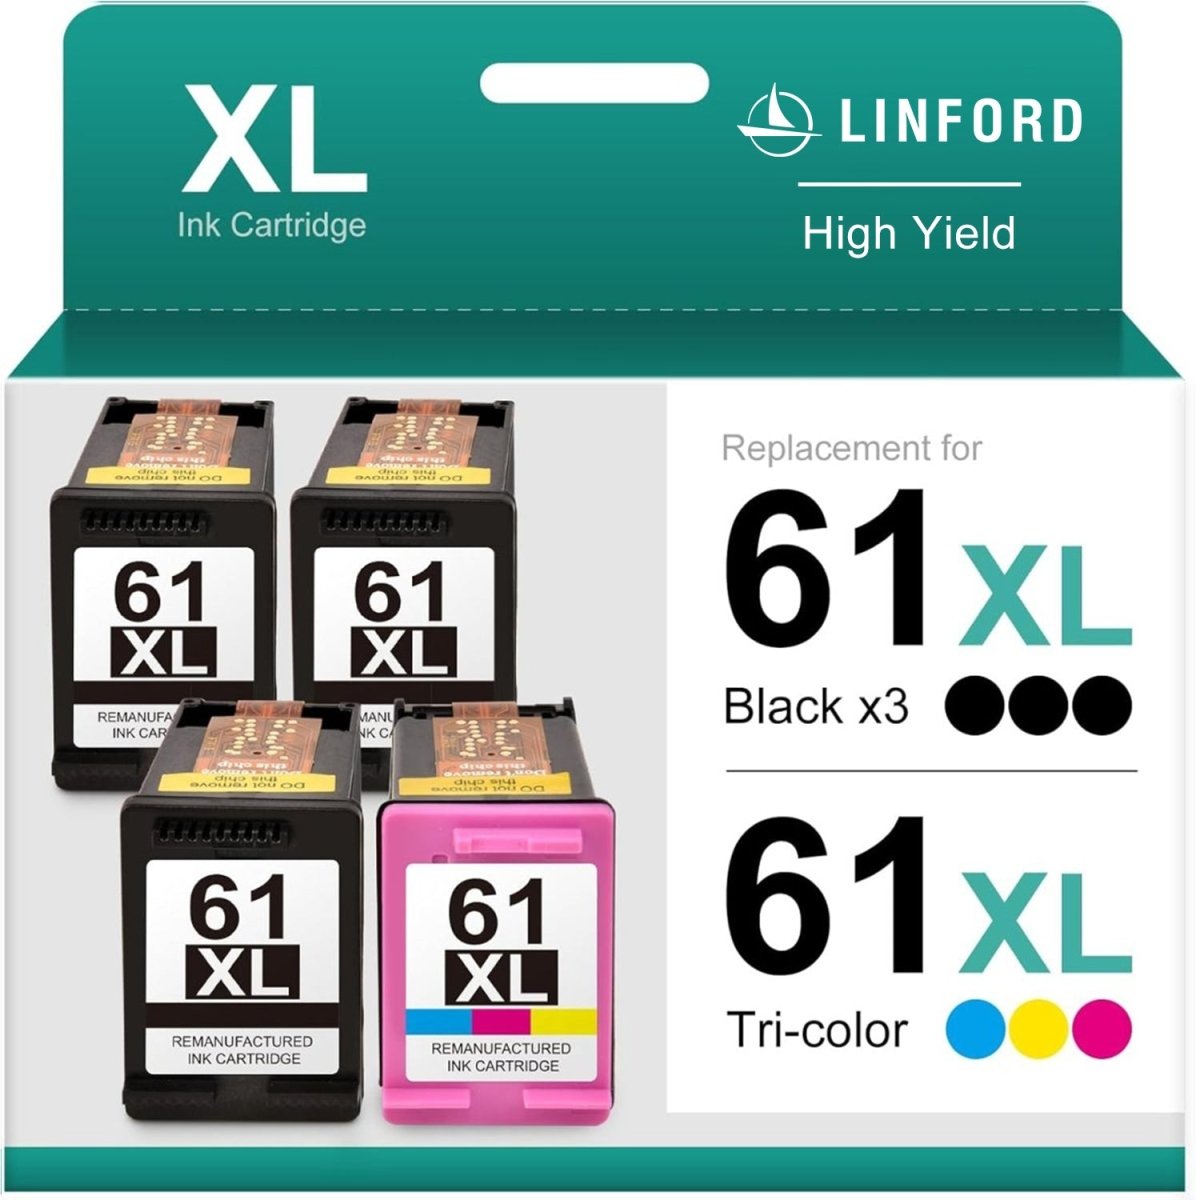 Remanufactured 61XL Black and Tri-color Ink Cartridges (3 Black, 1 Tri-Color, 4-Pack) - Linford Office:Printer Ink & Toner Cartridge